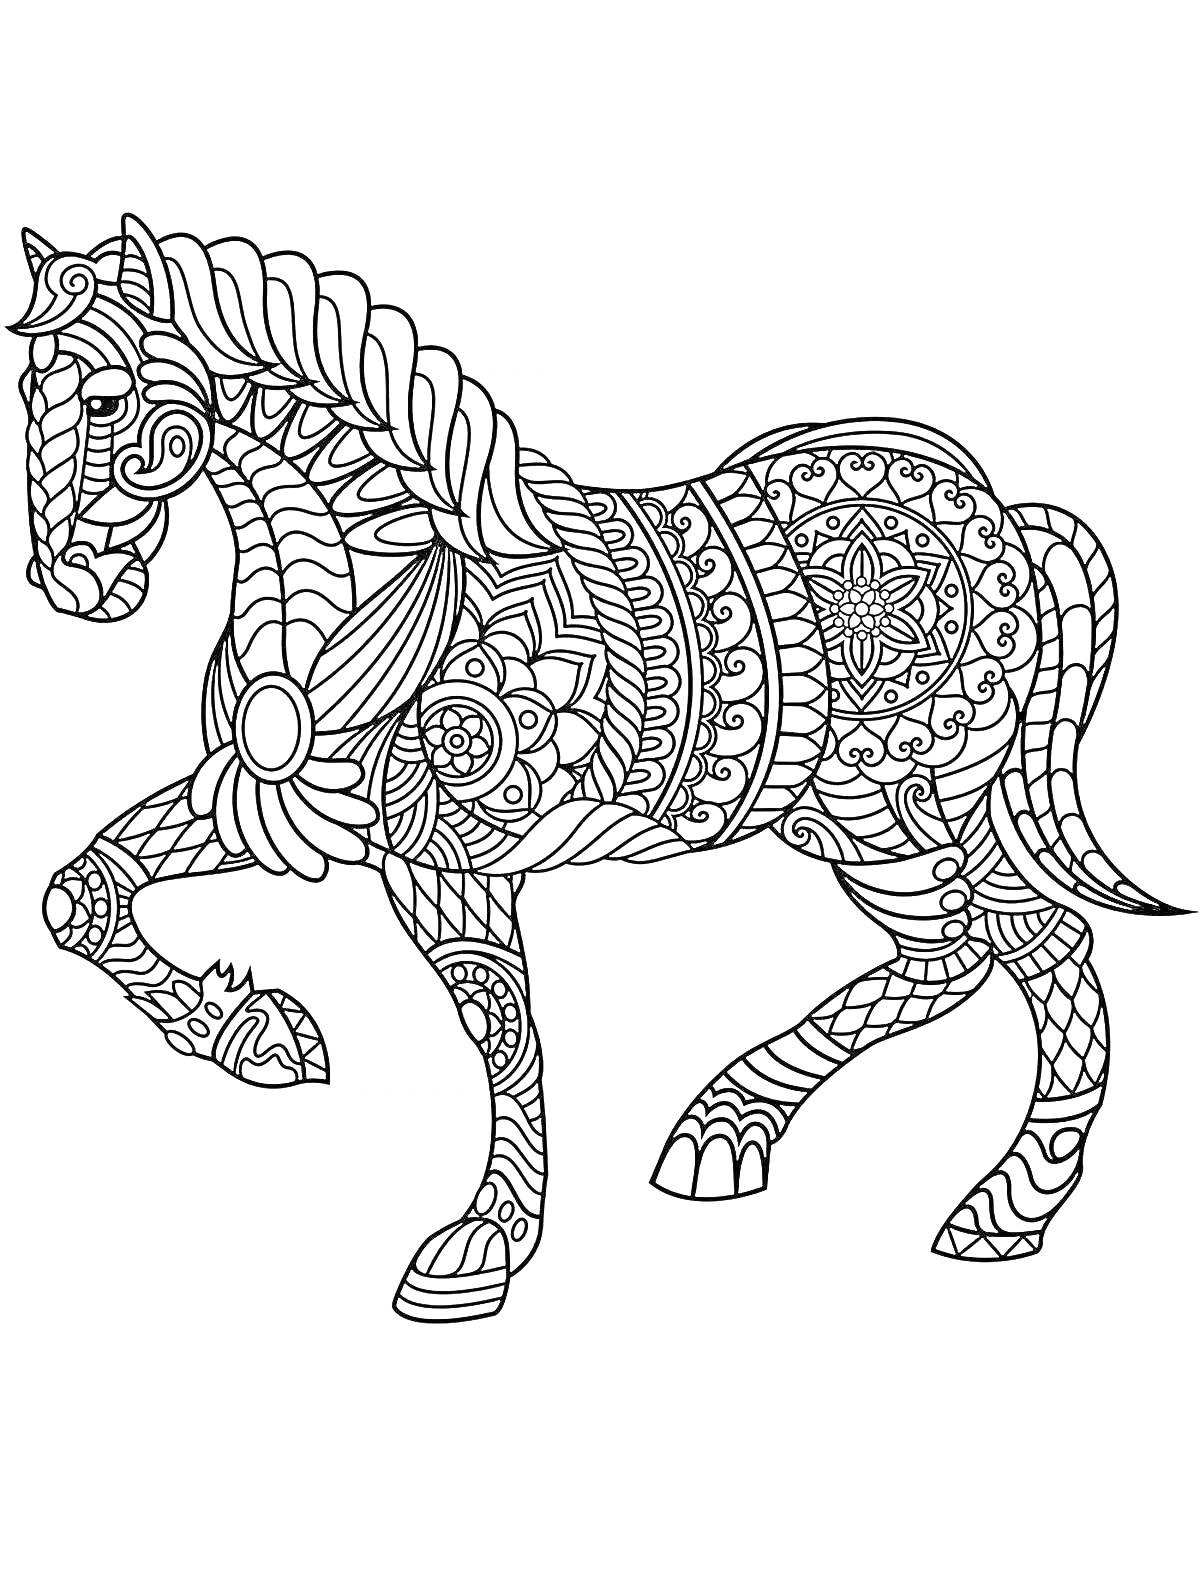 Раскраска Лошадь с абстрактными узорами (цветочные мотивы, геометрические формы)